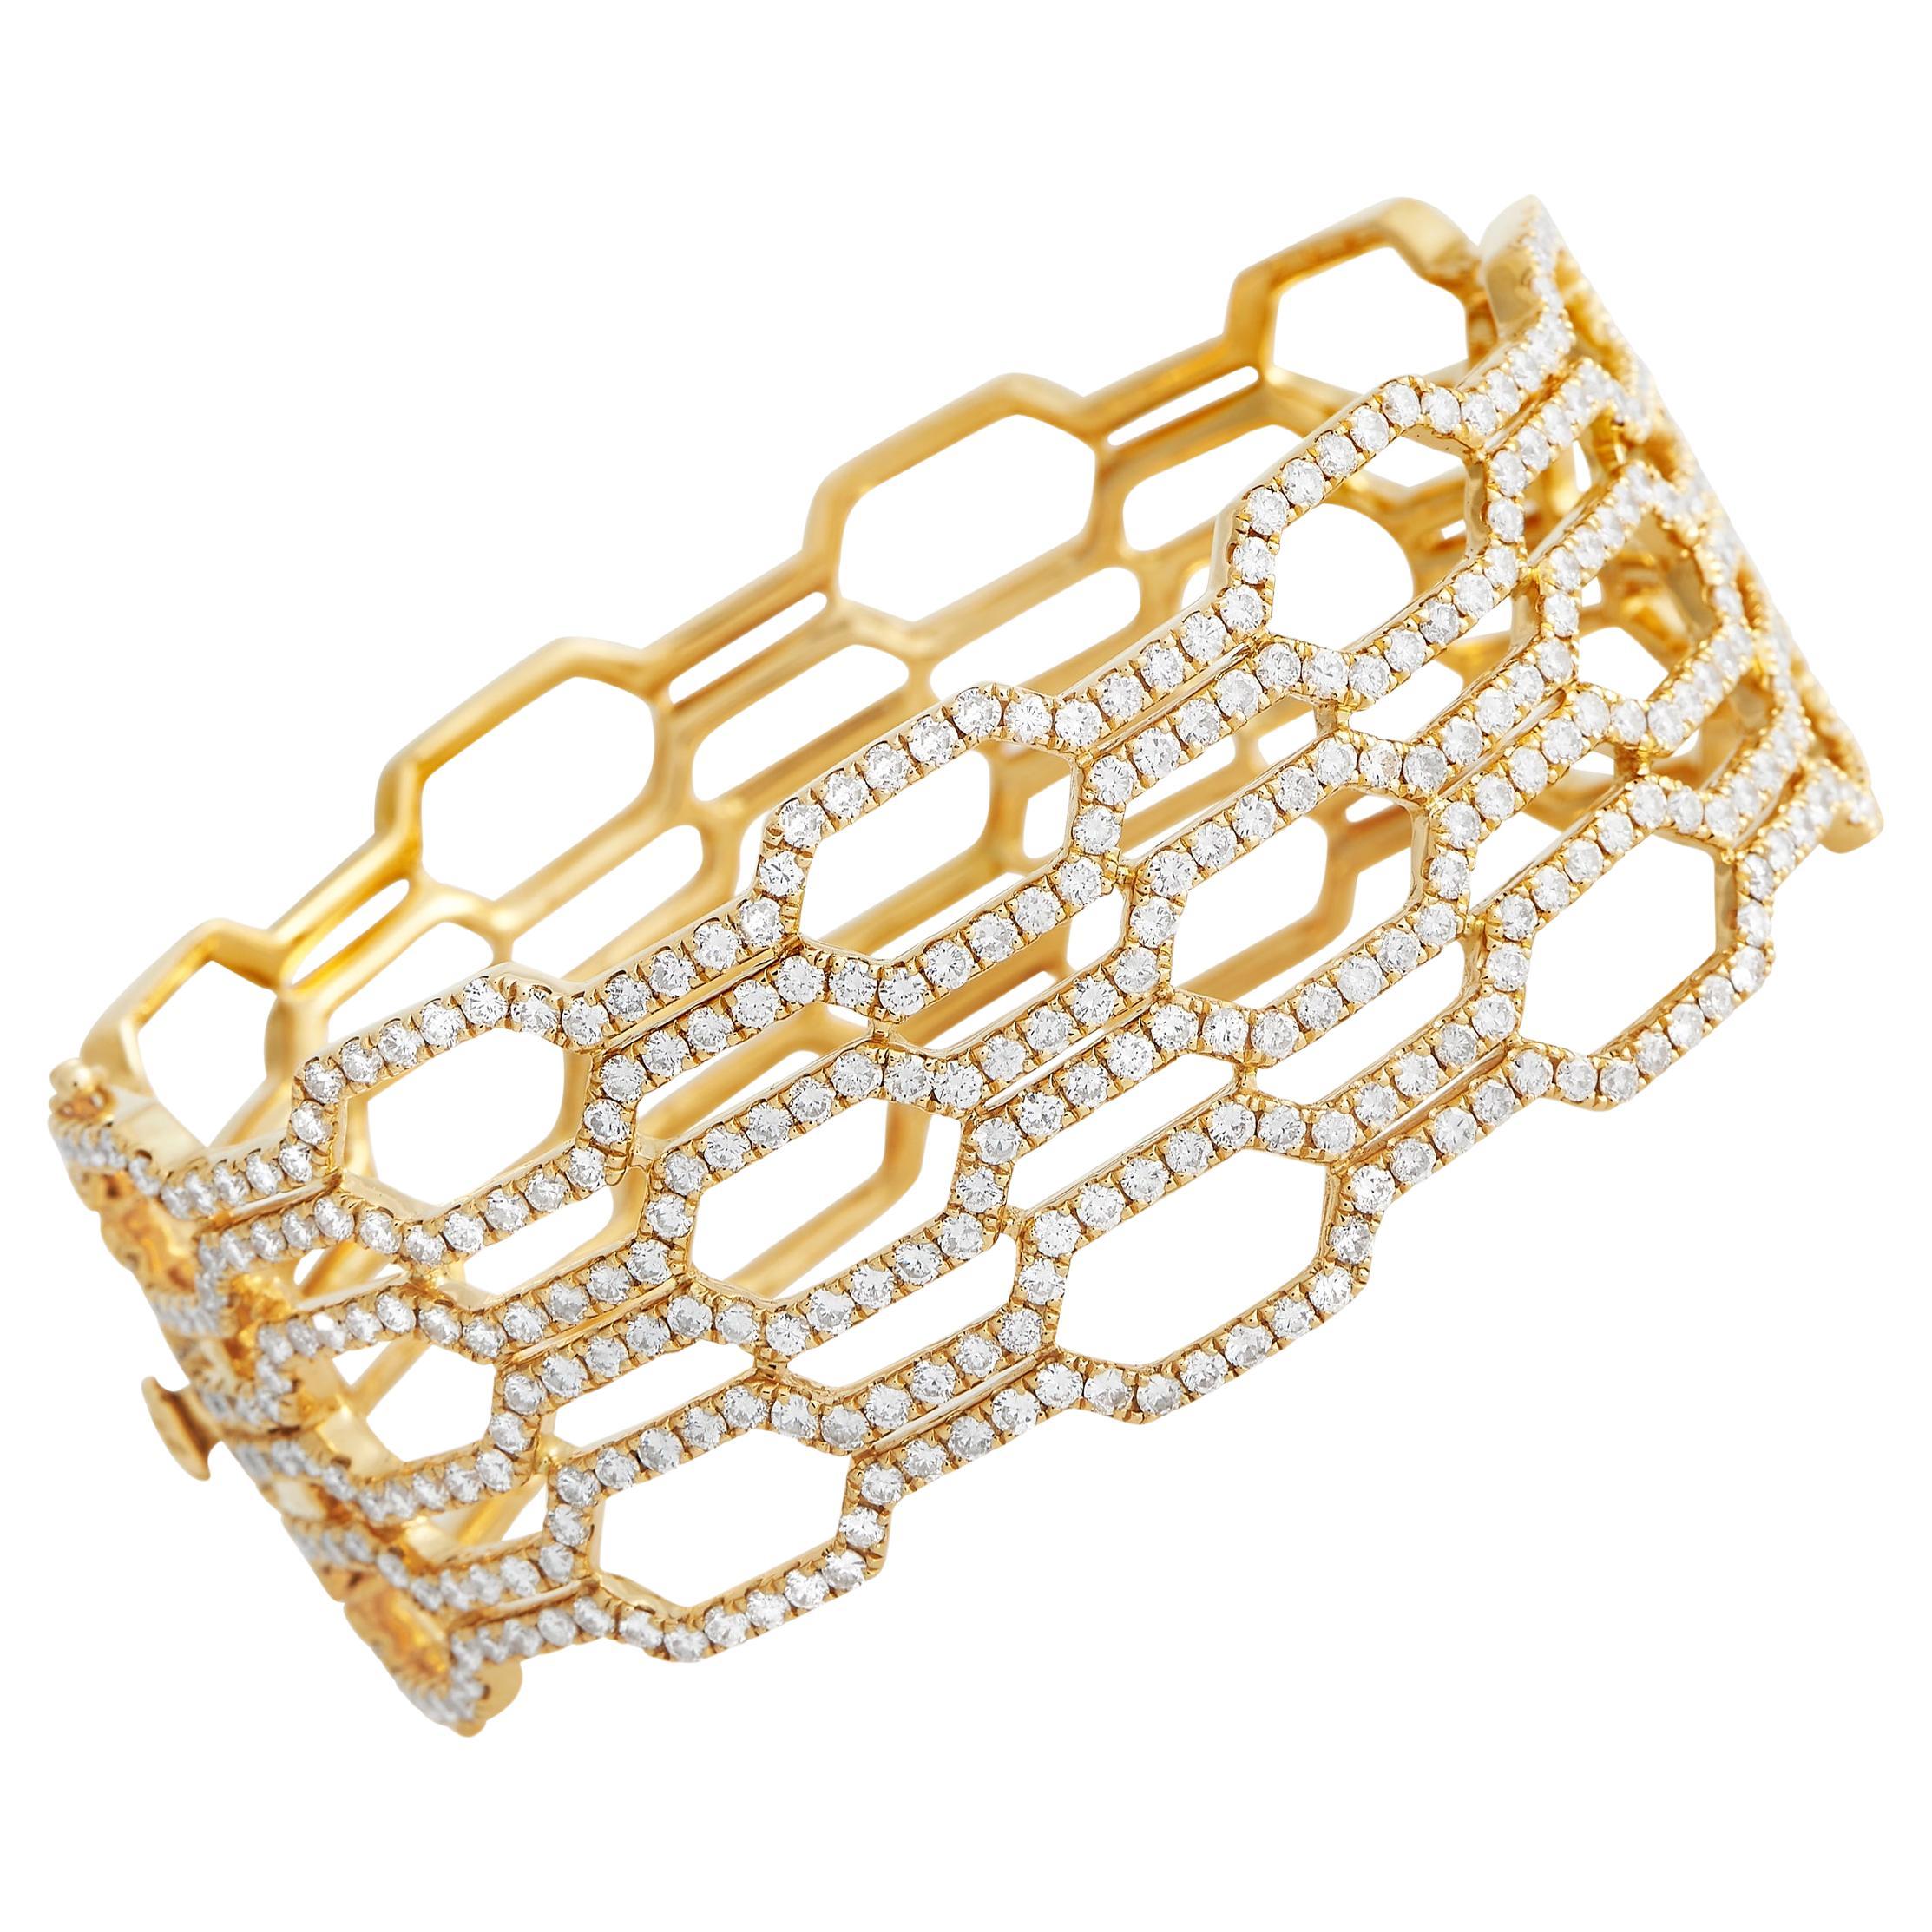 LB Exclusive 18K Yellow Gold 7.96ct Diamond Openwork Wide Bracelet